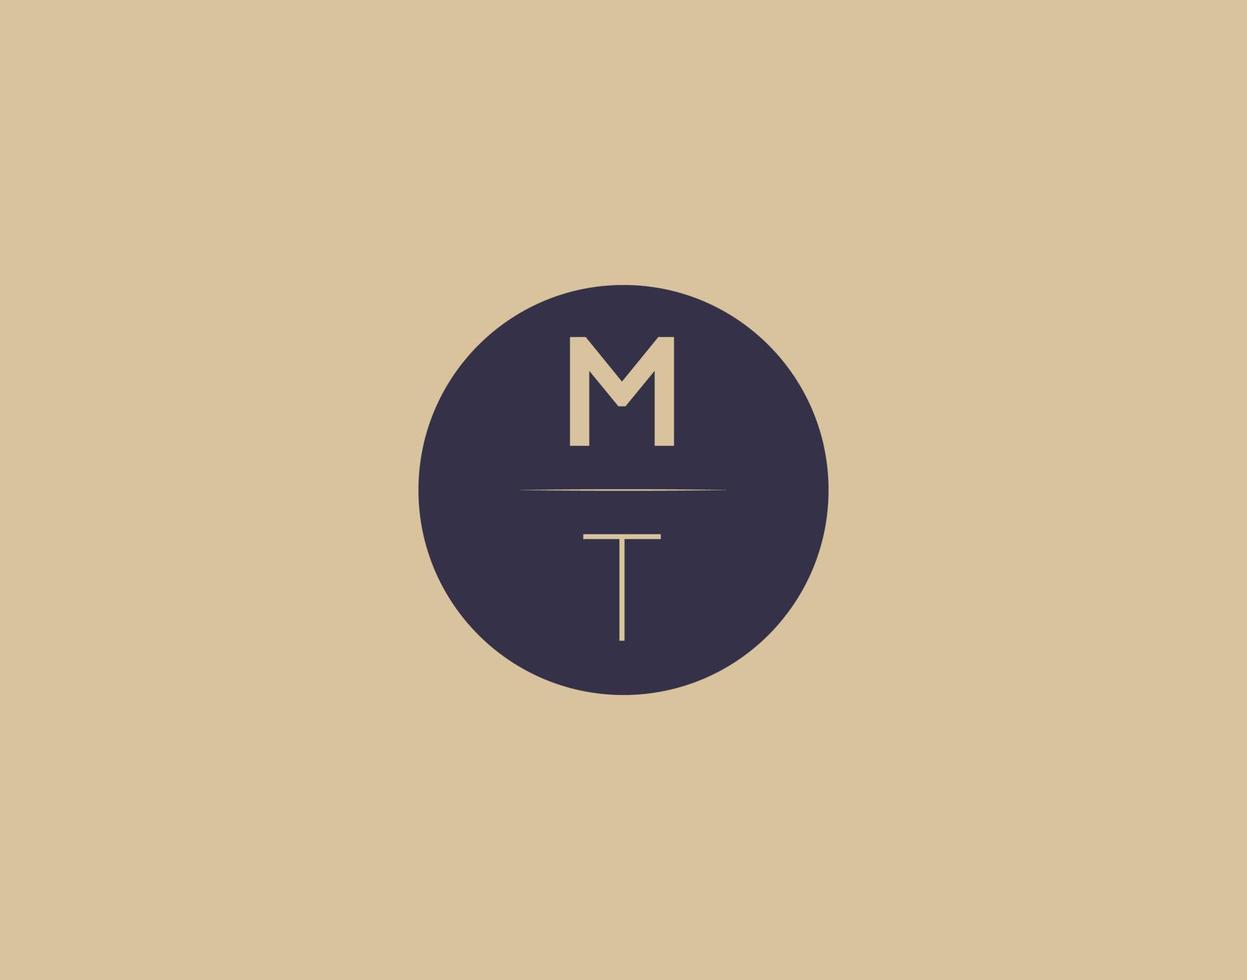 MT letter modern elegant logo design vector images